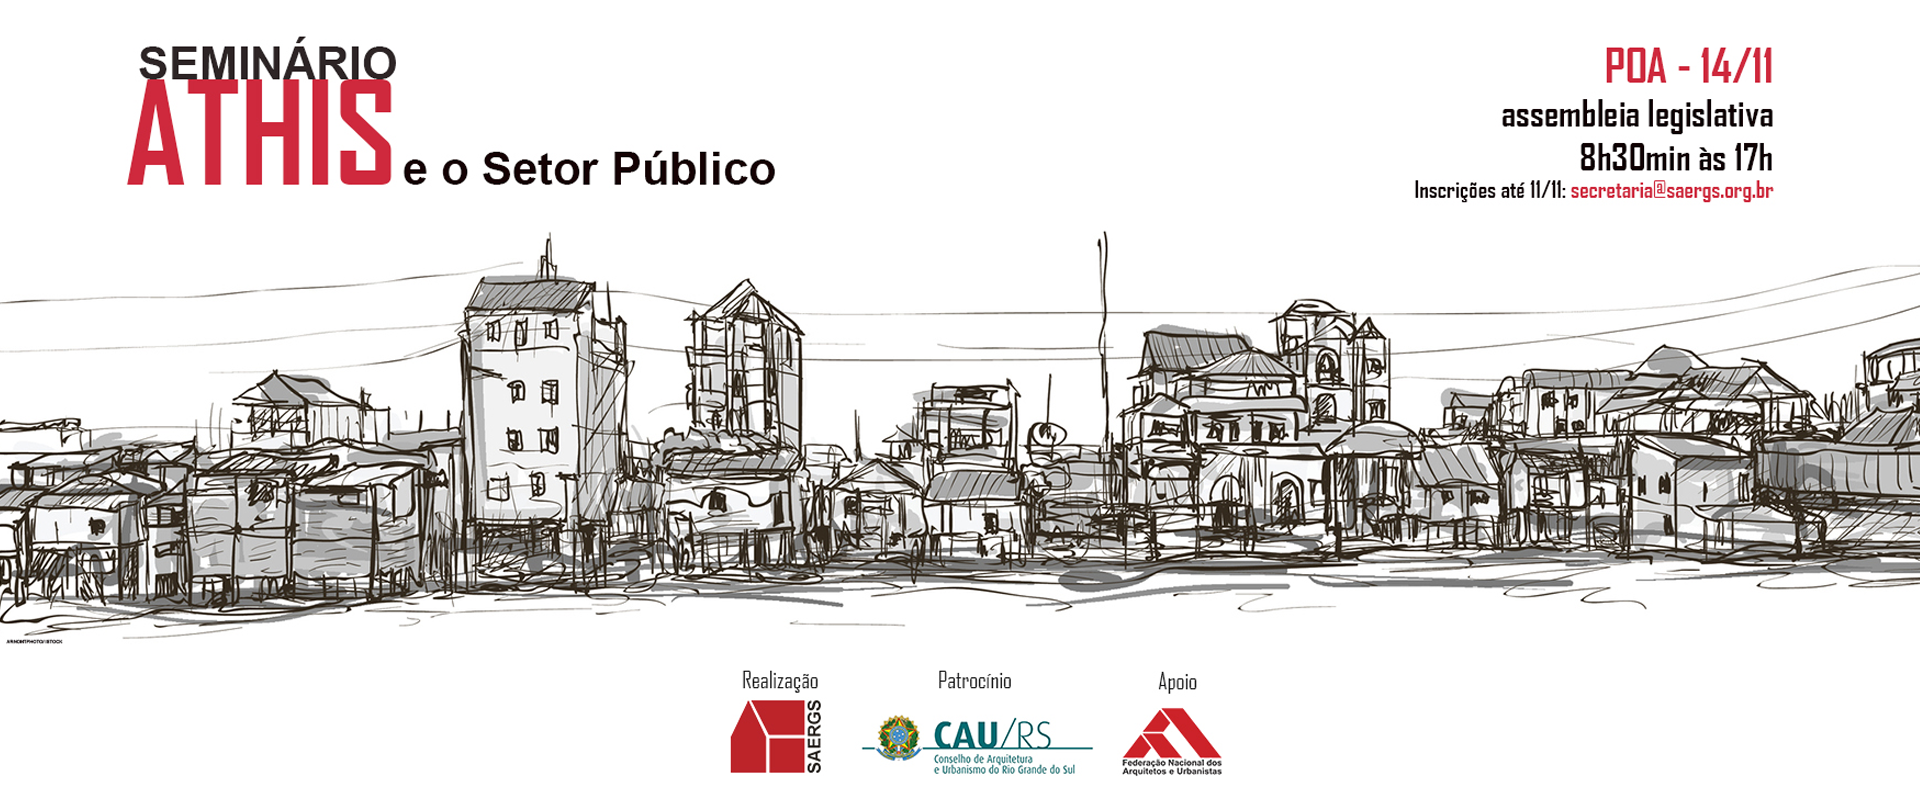 Gestão pública da habitação será tema de debate em Porto Alegre